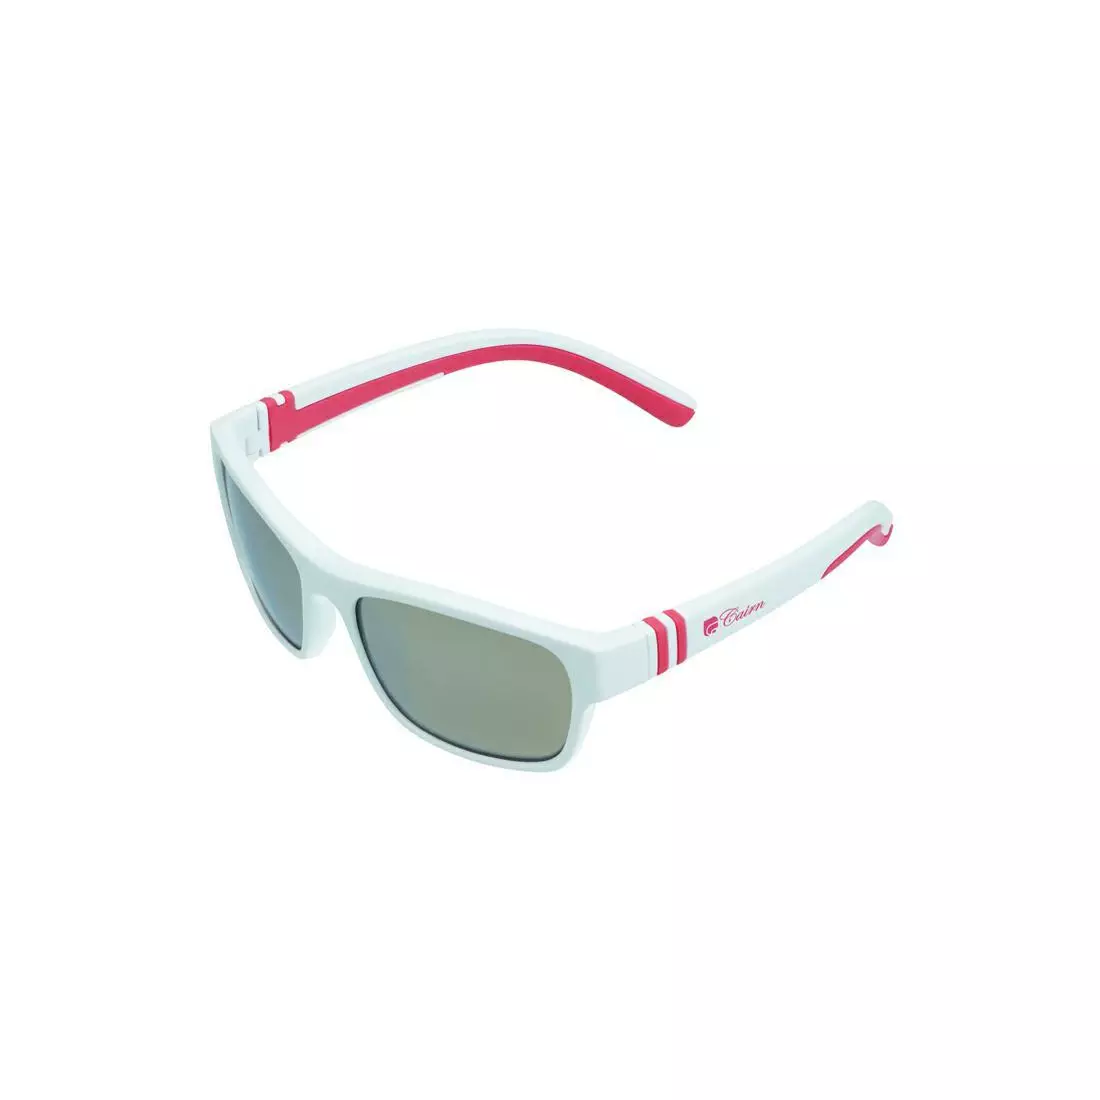 CAIRN dětské sportovní brýle KIWI J white/pink JLKIWI101